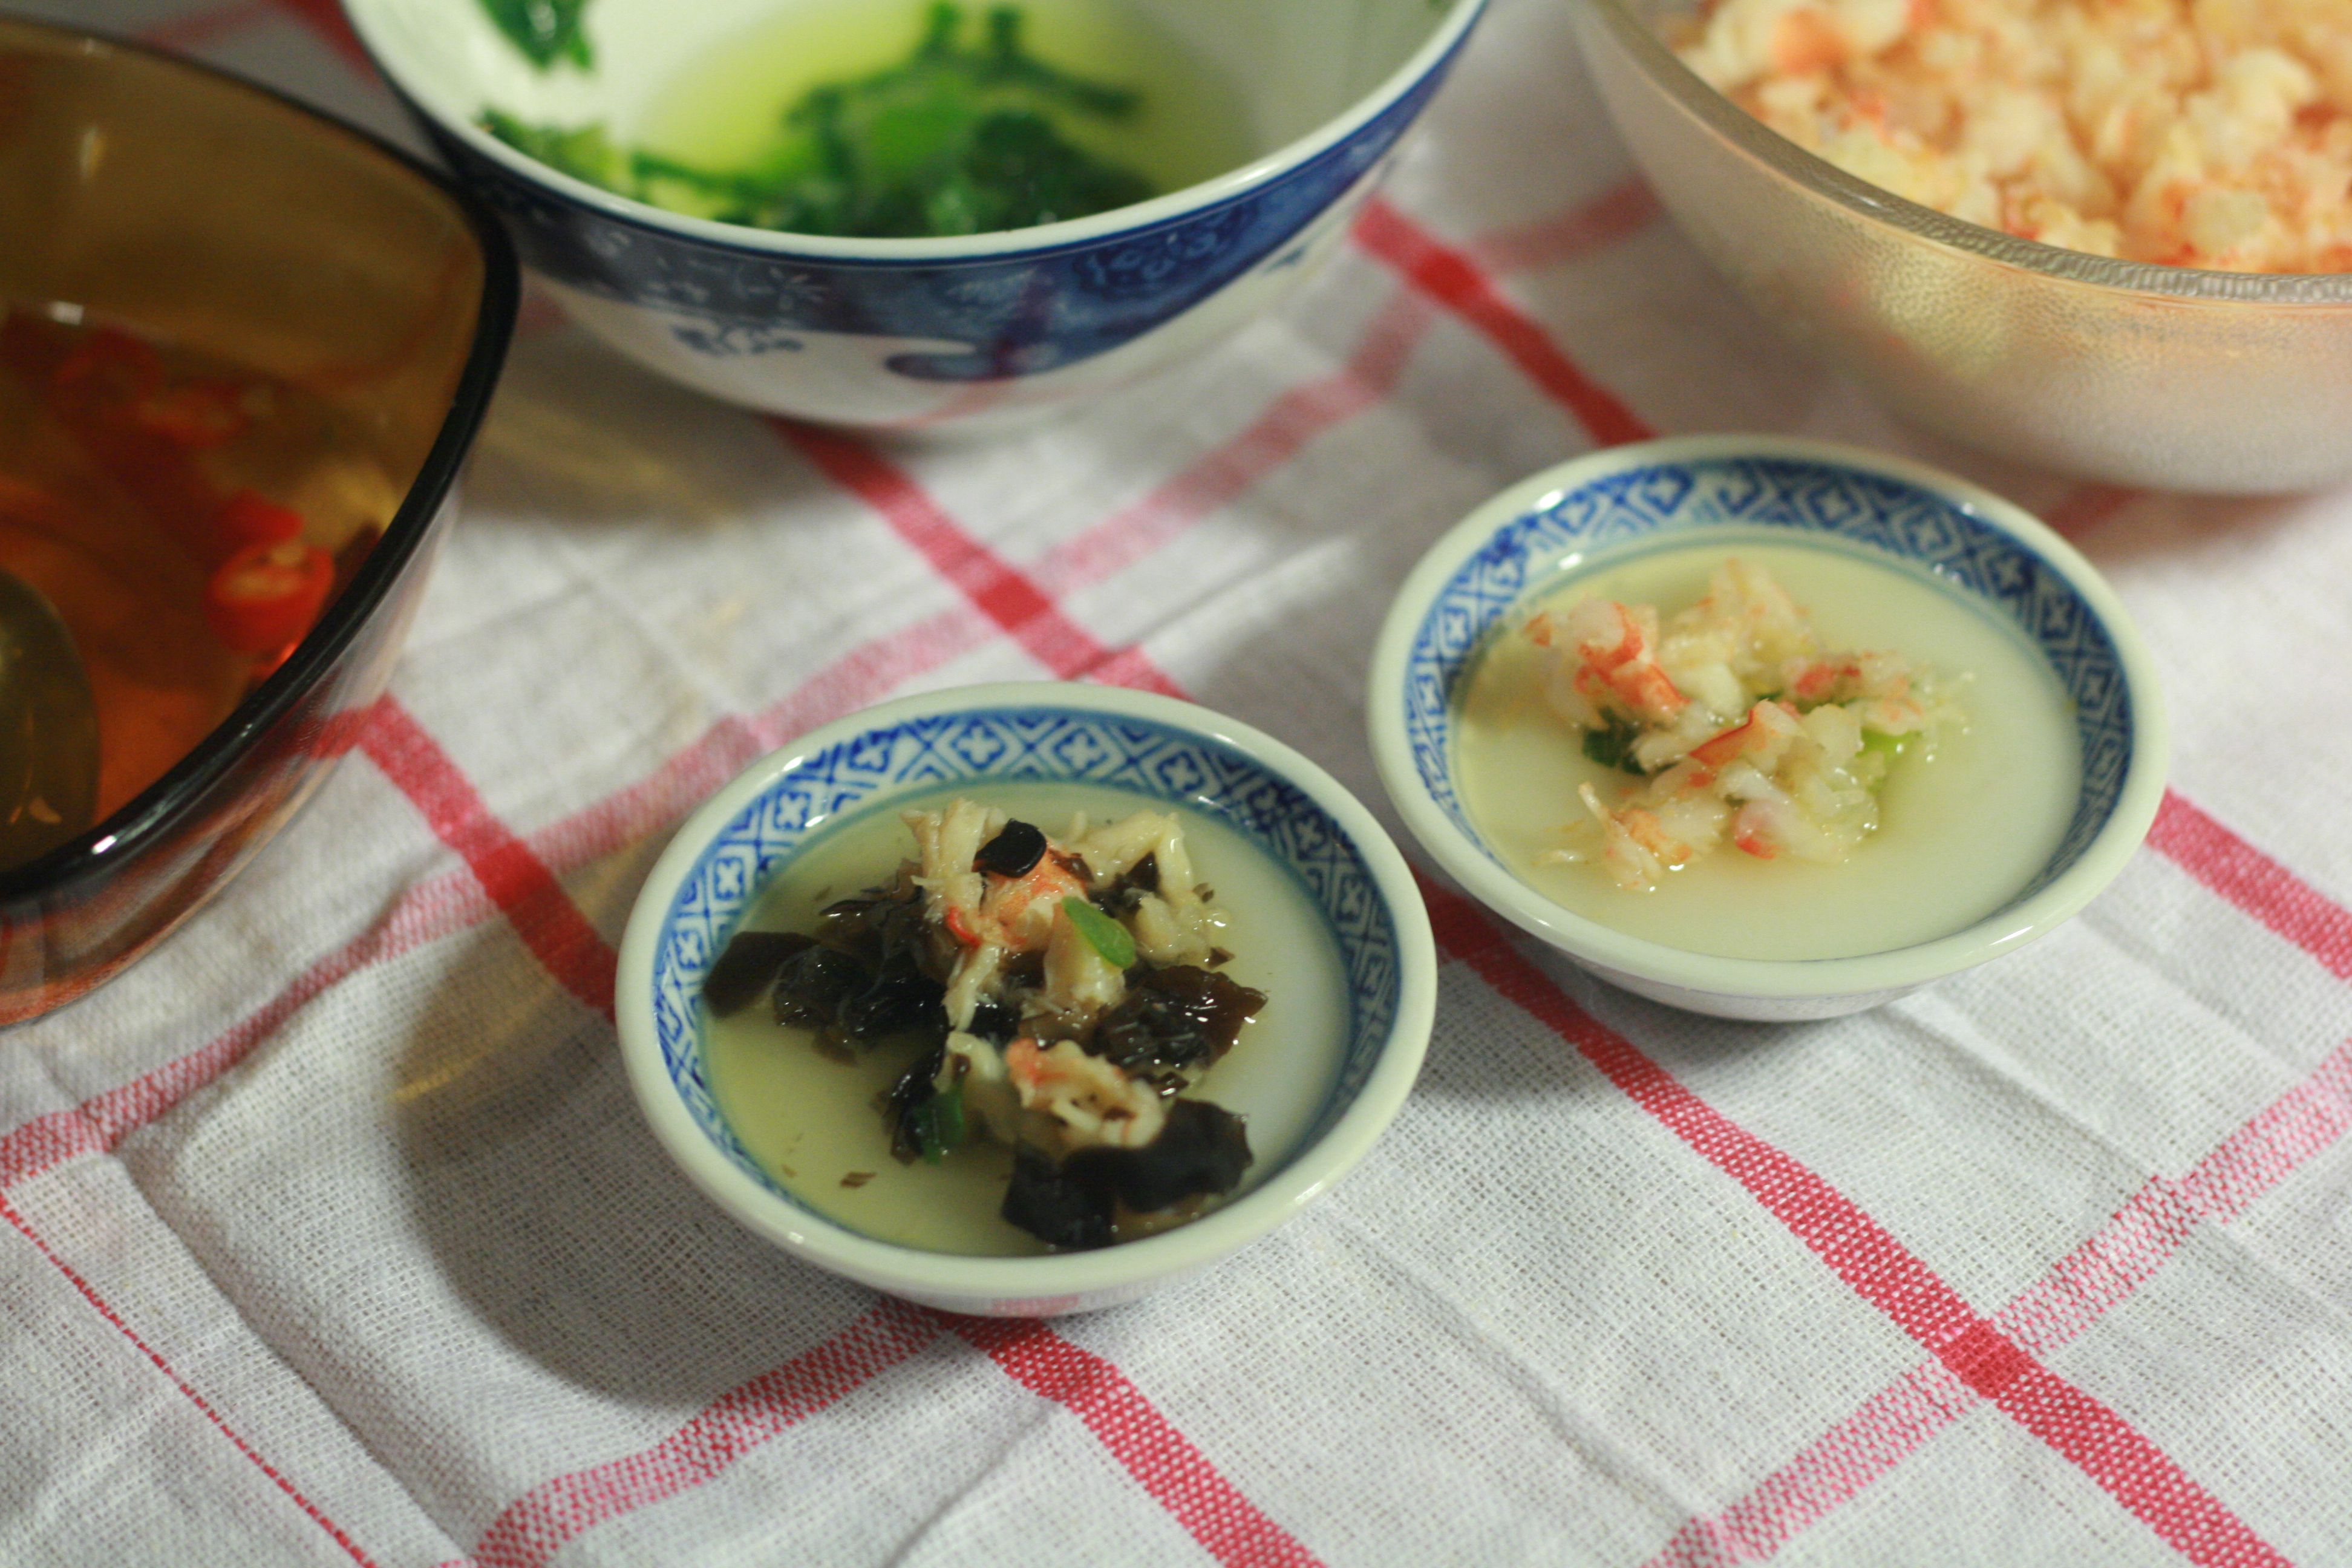 Công thức và cách làm bánh bèo – Recipe for Vietnamese water fern cake |  Eating healthy, eating tasty